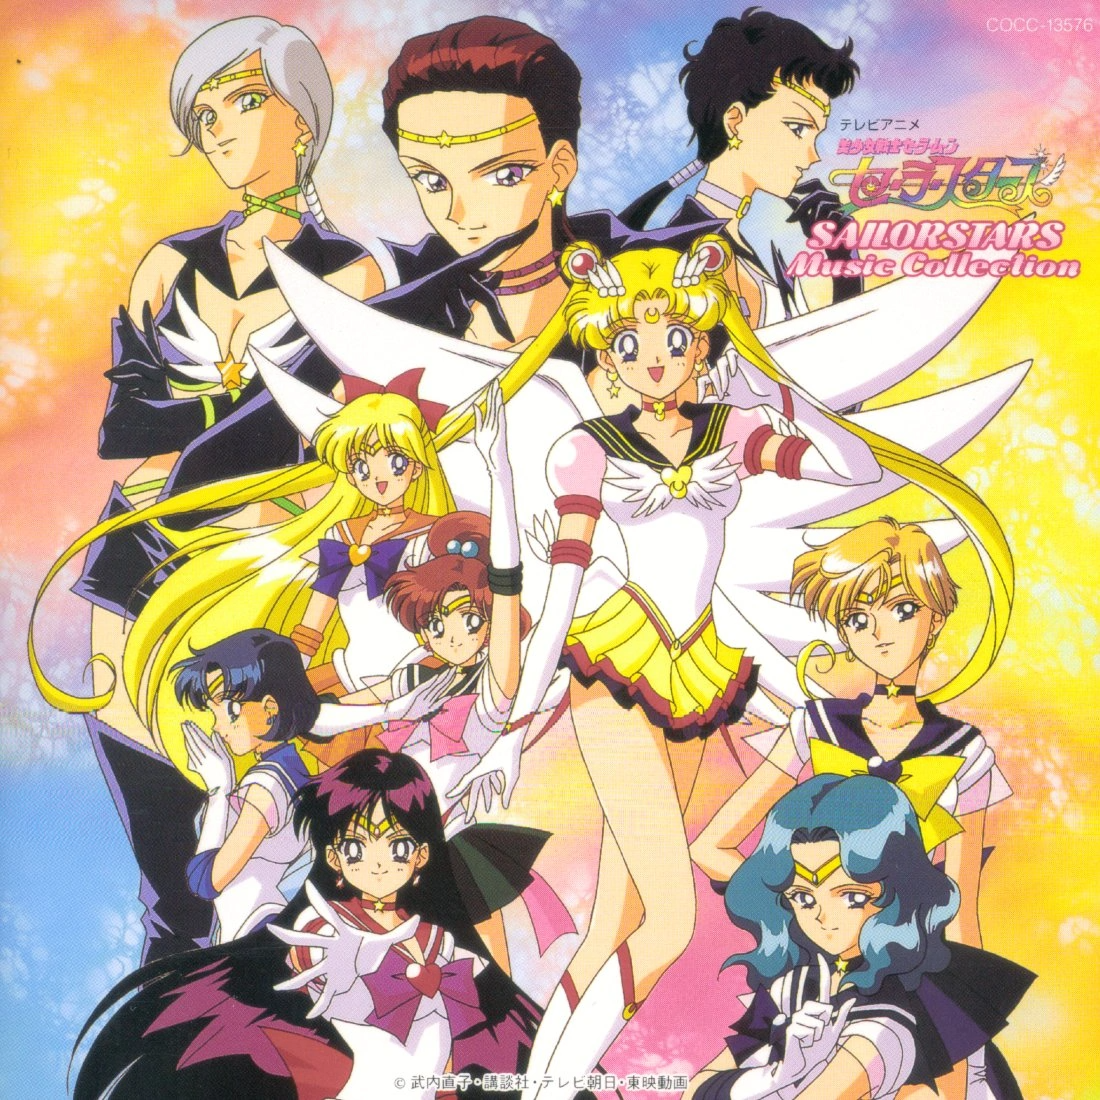 sailor moon: novo mangá e anime! + personagens!